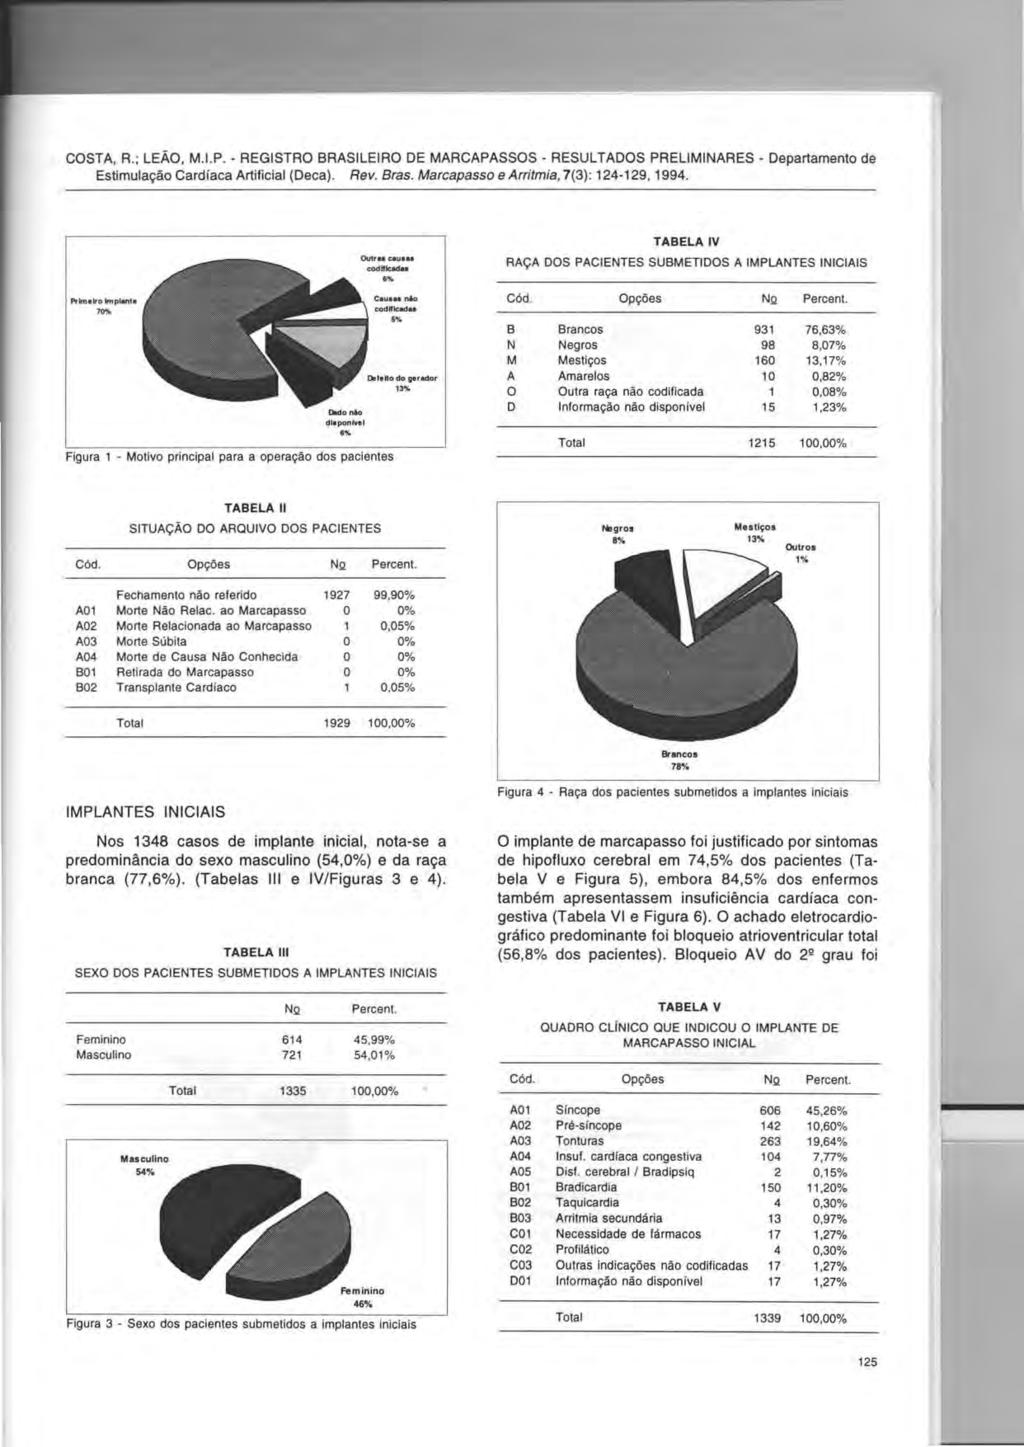 COSTA, R.; LEAO, M.I.P. - REGISTRO BRASILEIRO DE MARCAPASSOS - RESULTADOS PRELIMINARES - Departamento de Estimula~ao Cardiaca Artificial (Deca). Rev. Bras. Marcapasso e Arritmia, 7(3): 124-129, 1994.